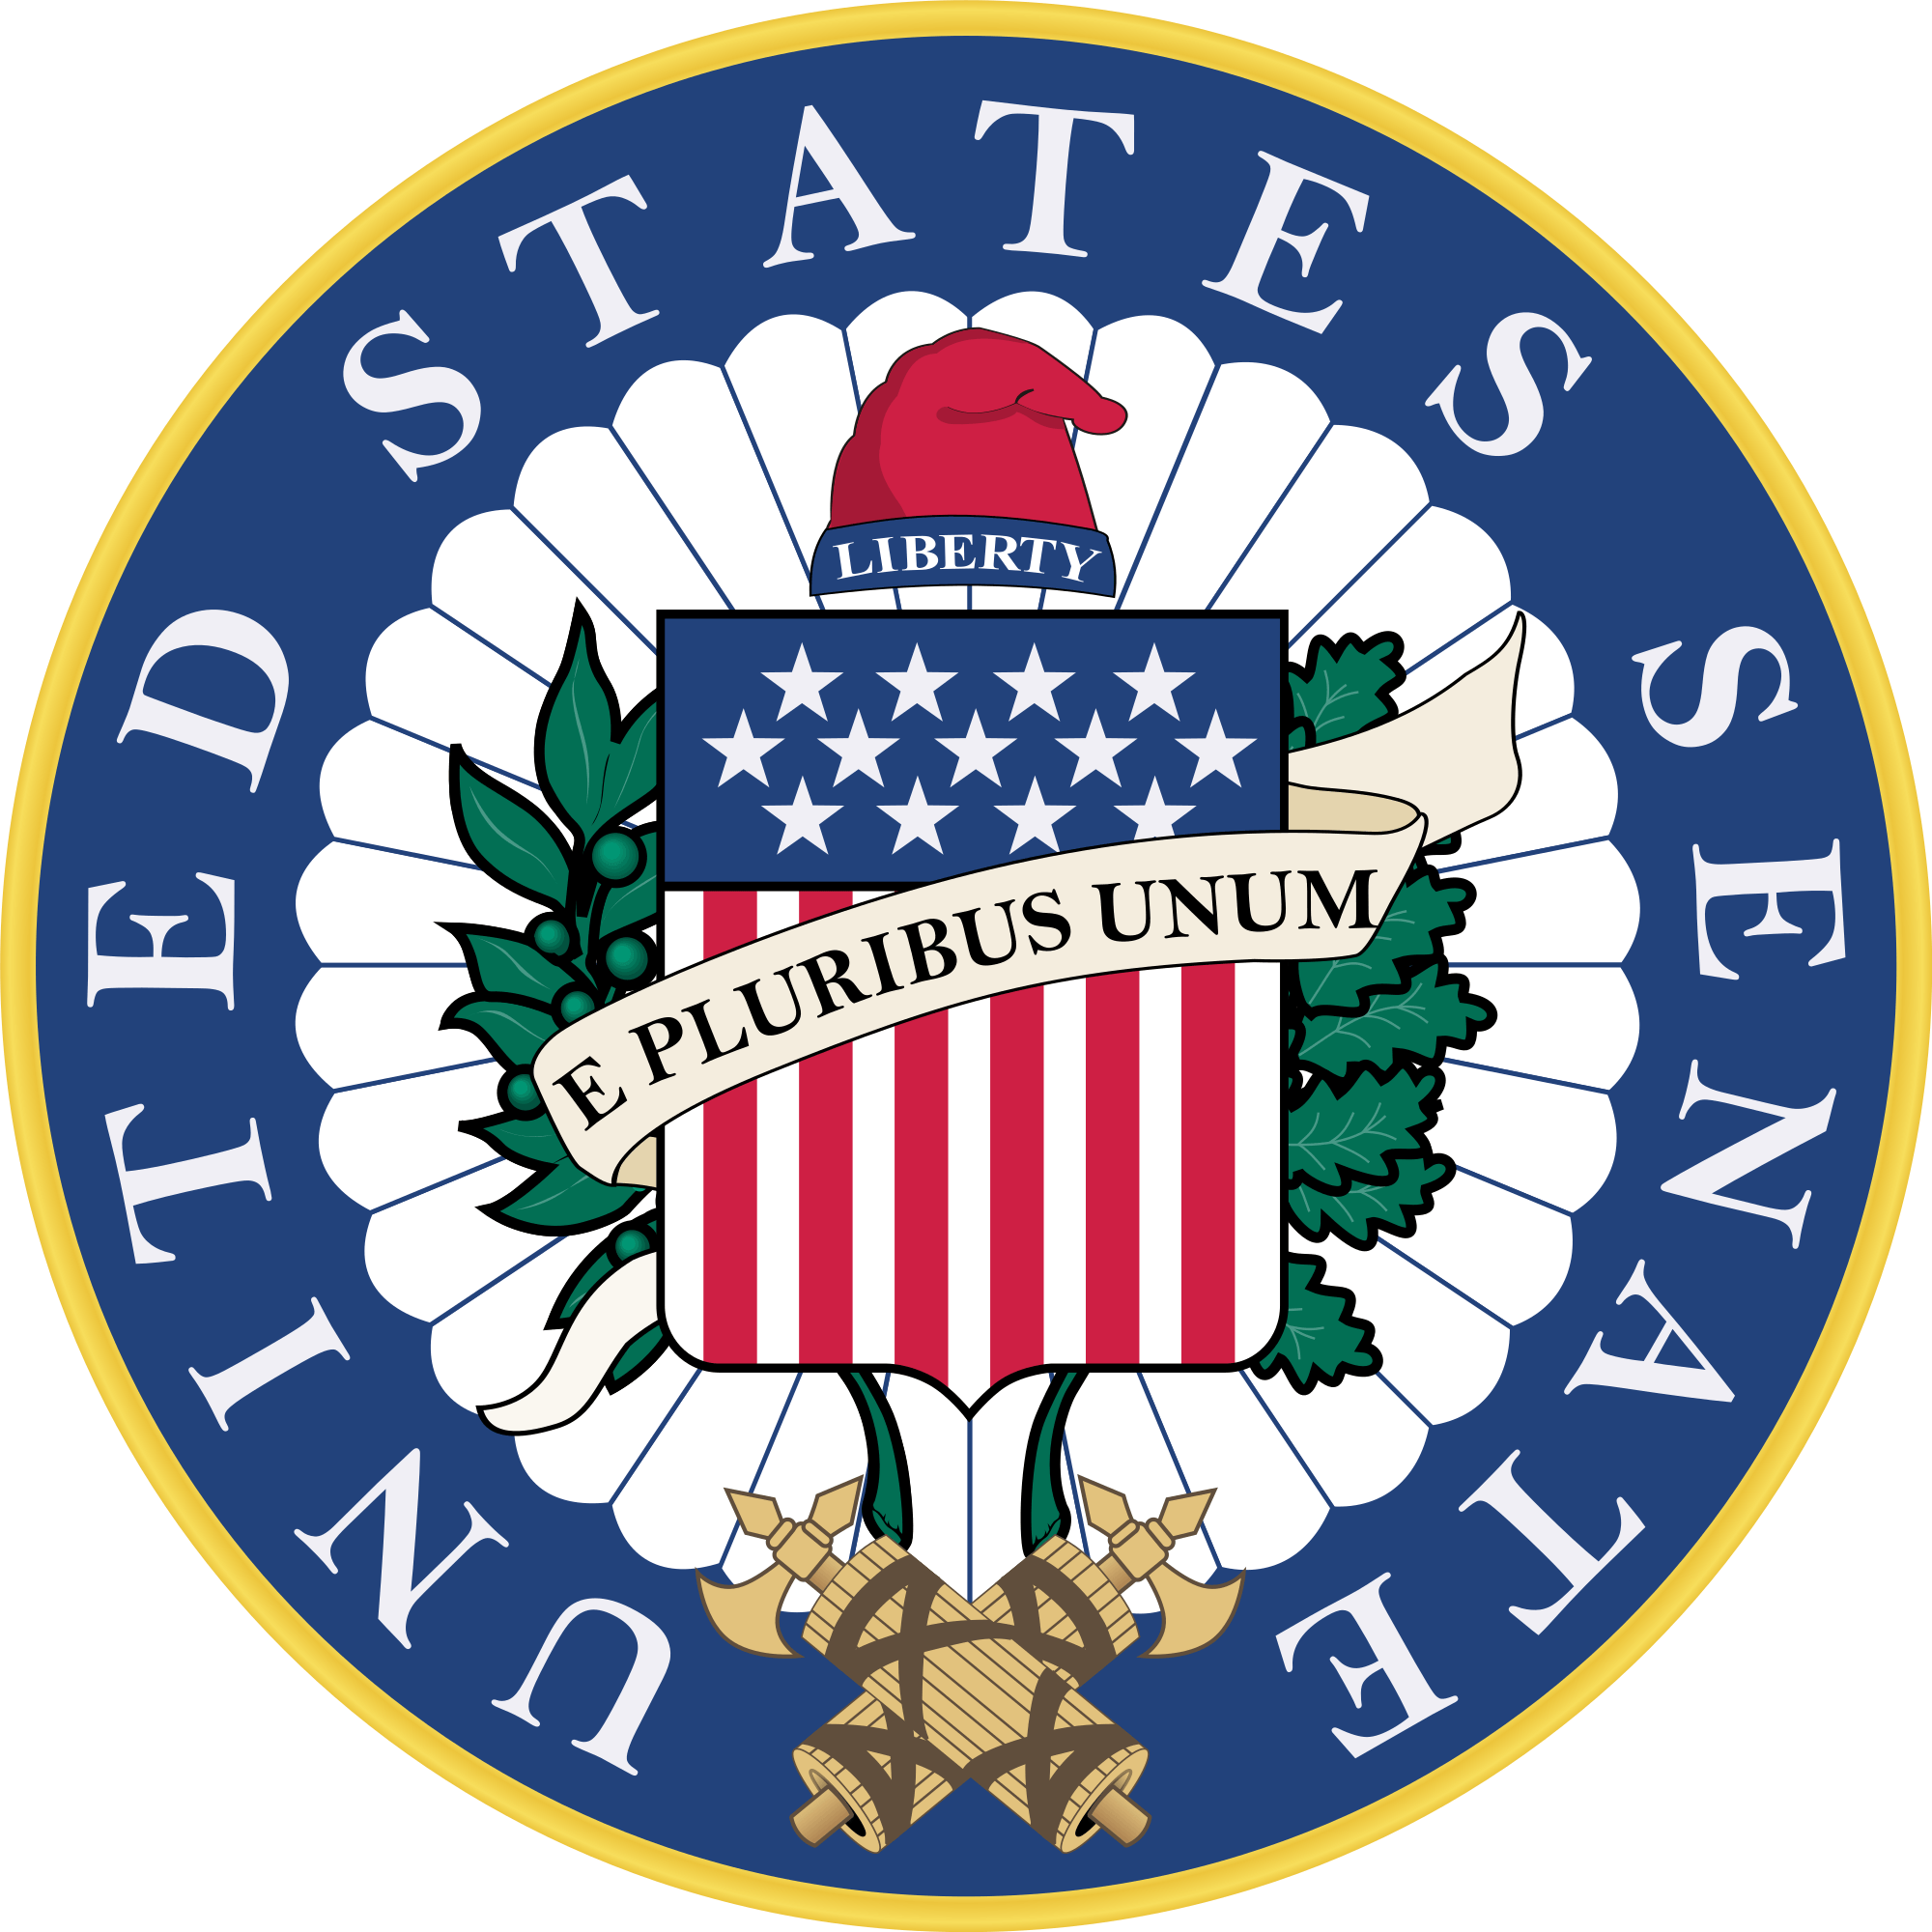 Senator Logo - United States Senate